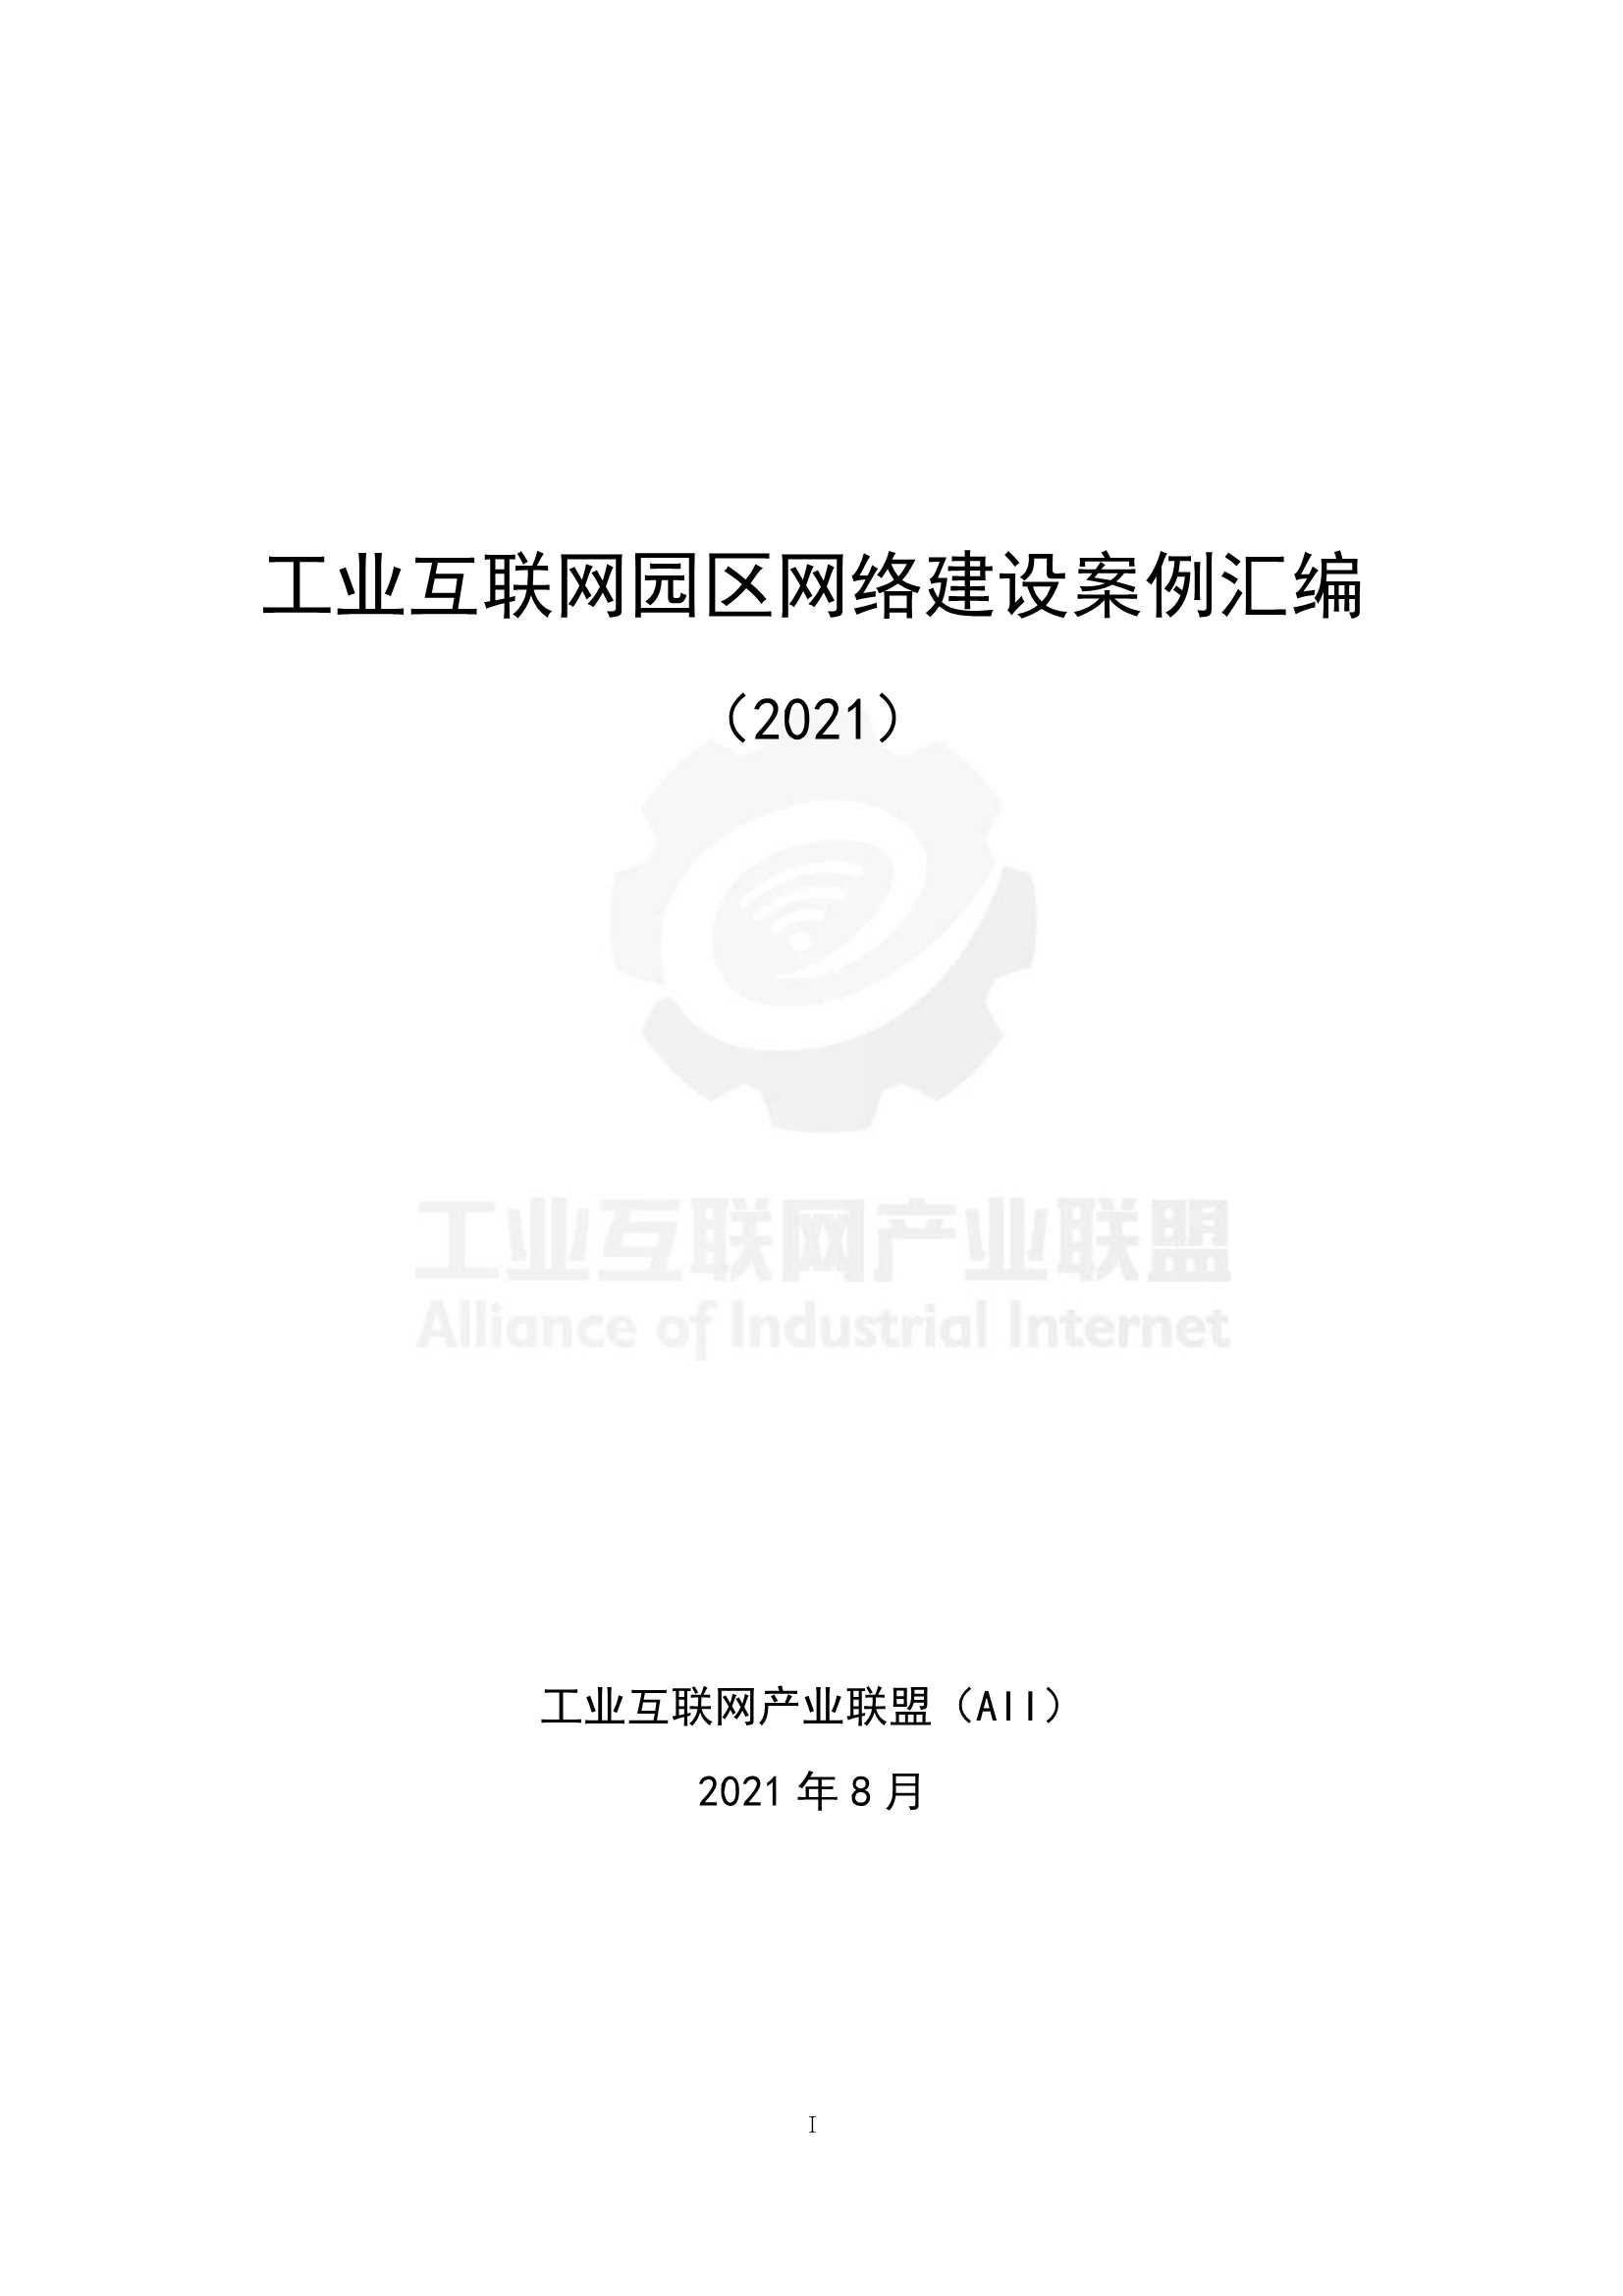 工业互联网产业联盟-2021工业互联网园区网络建设案例汇编-2021.10-274页